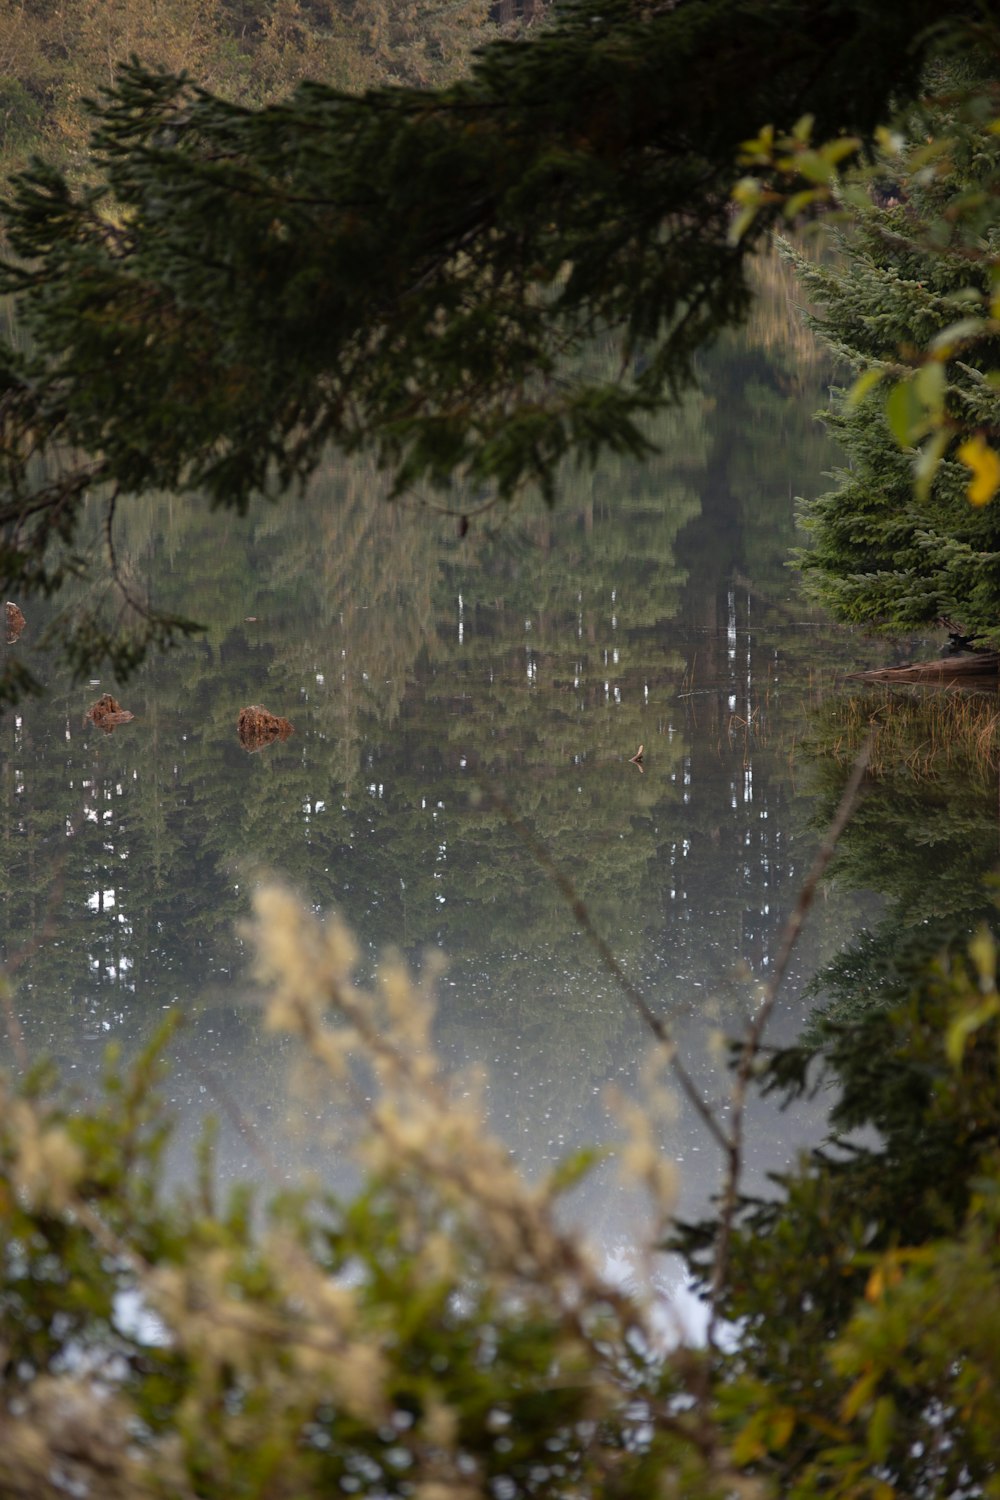 un groupe d’oiseaux nageant dans un étang entouré d’arbres